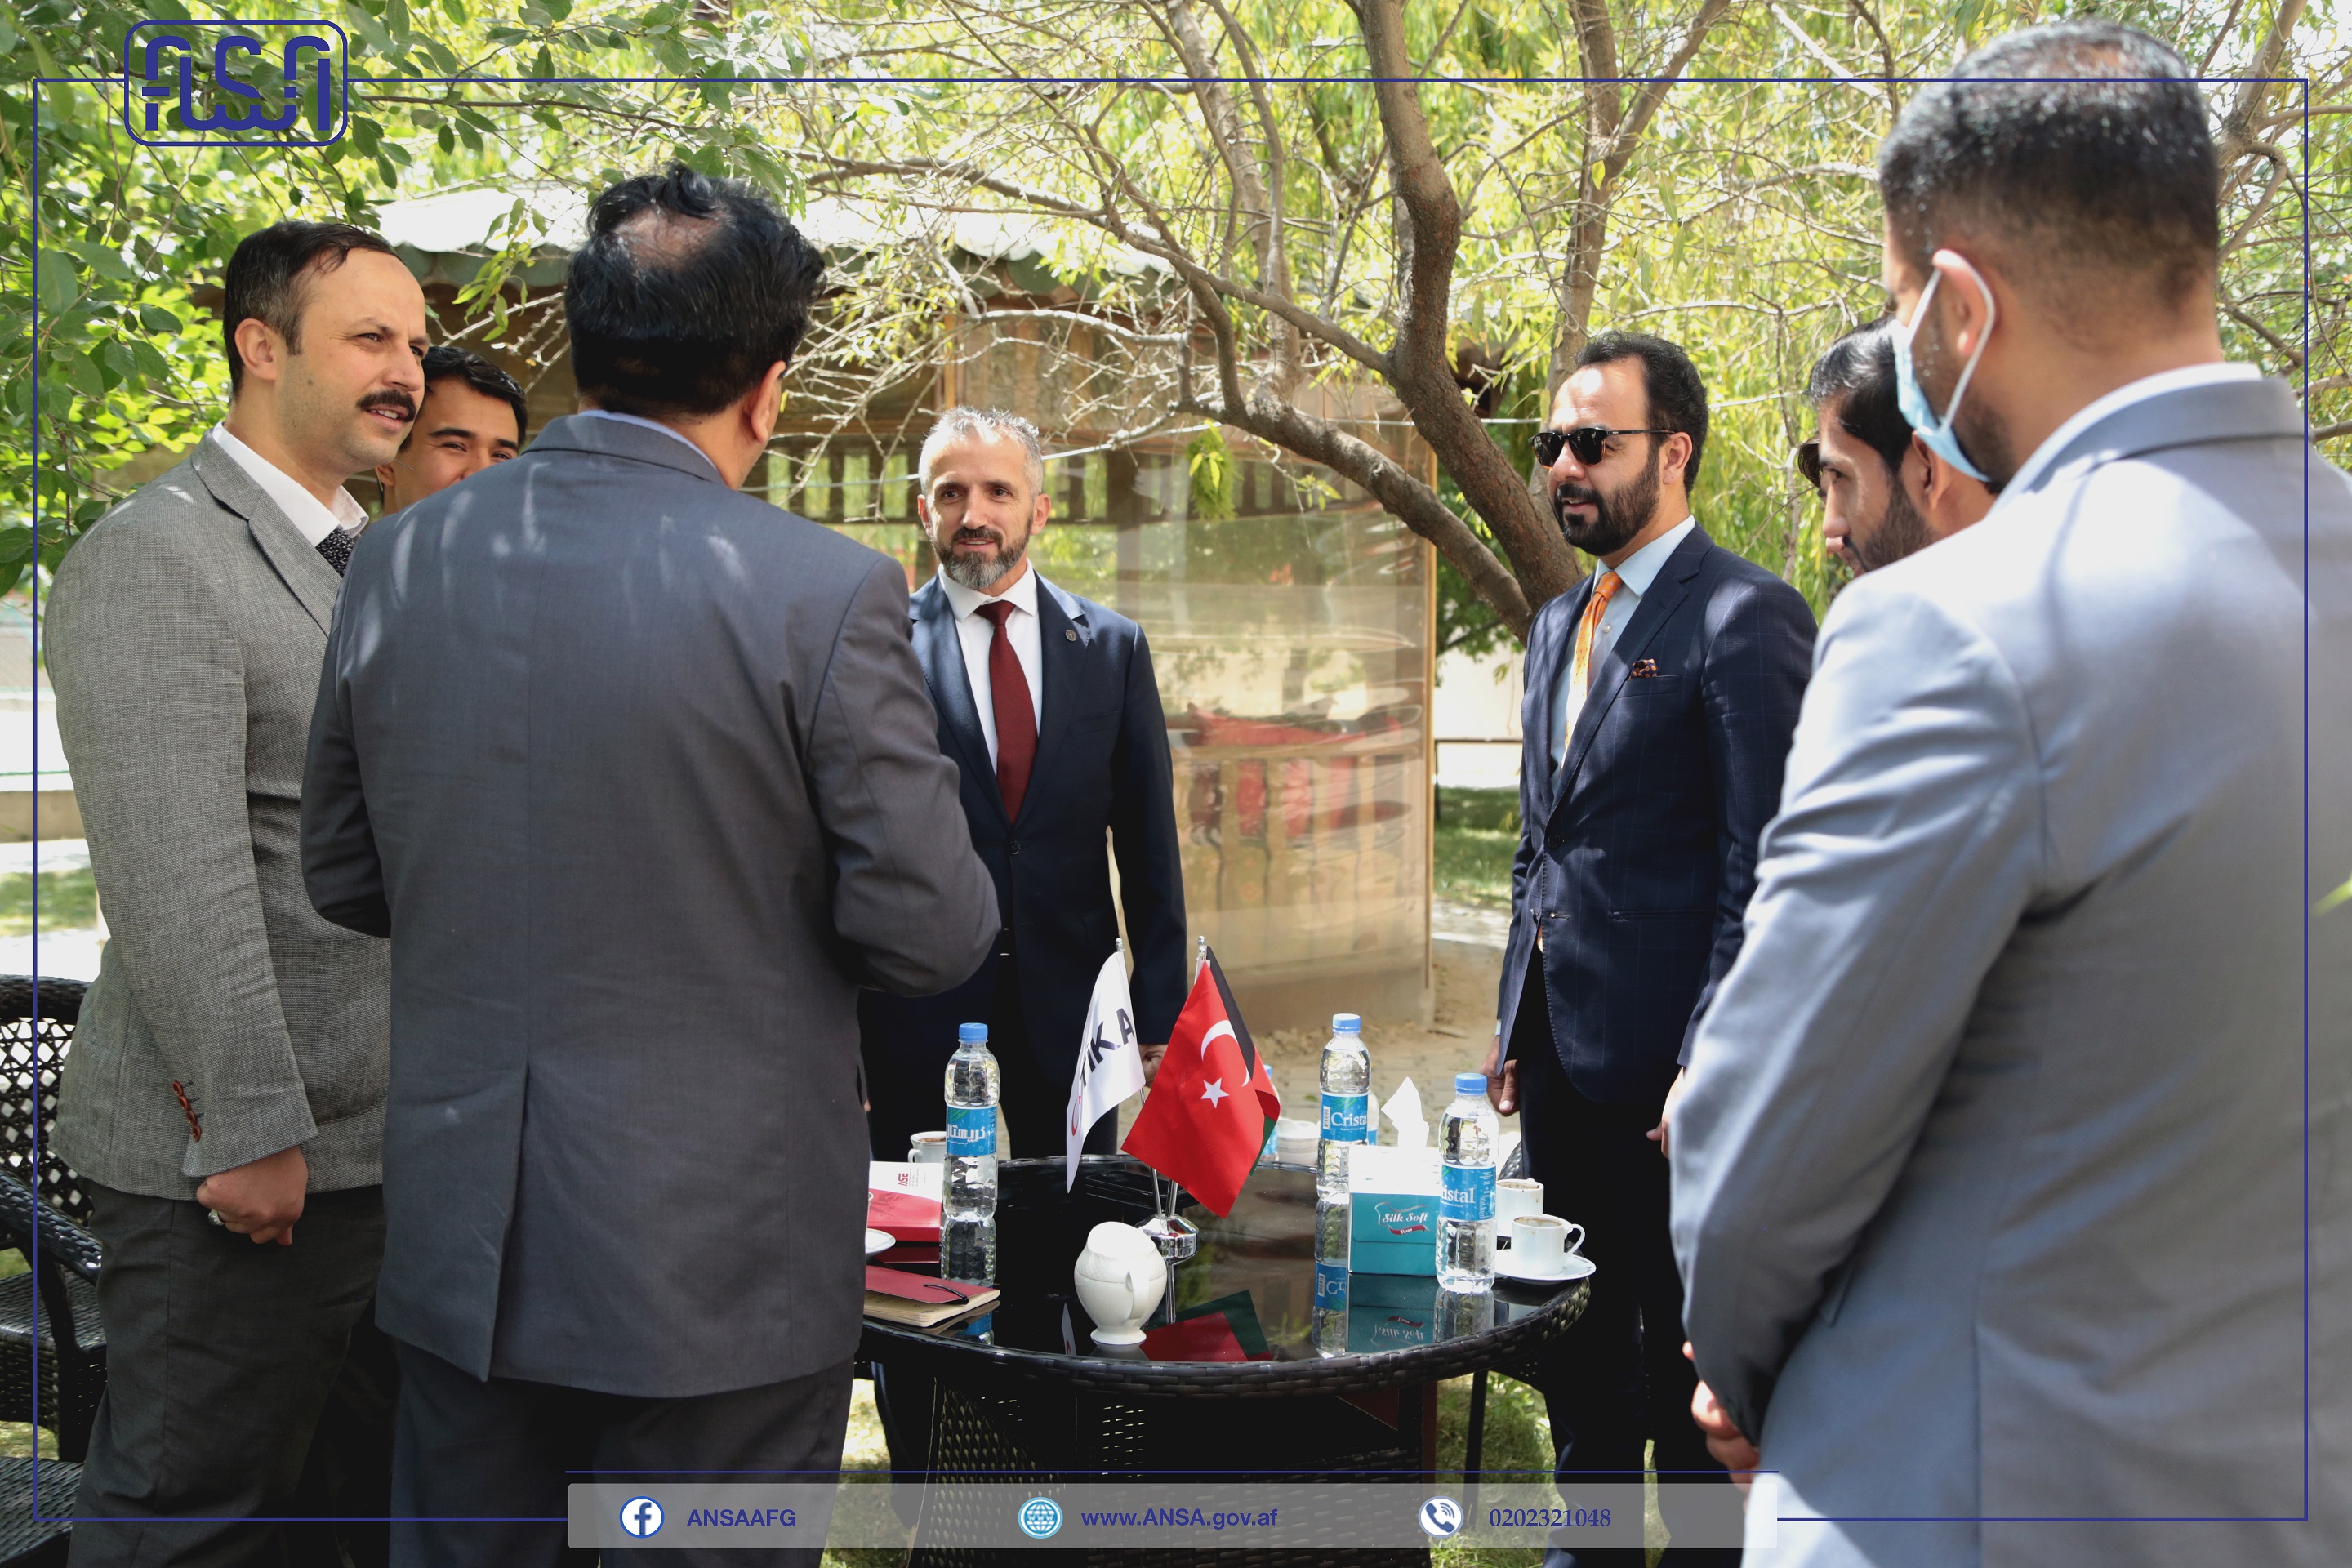 نشست مشترک جهت همکاری های دو جانبه میان اداره ملی ستندرد و ریاست آژانس انسجام و همکاری جمهوری اسلامی ترکیه (TIKA) برگزار گردید.